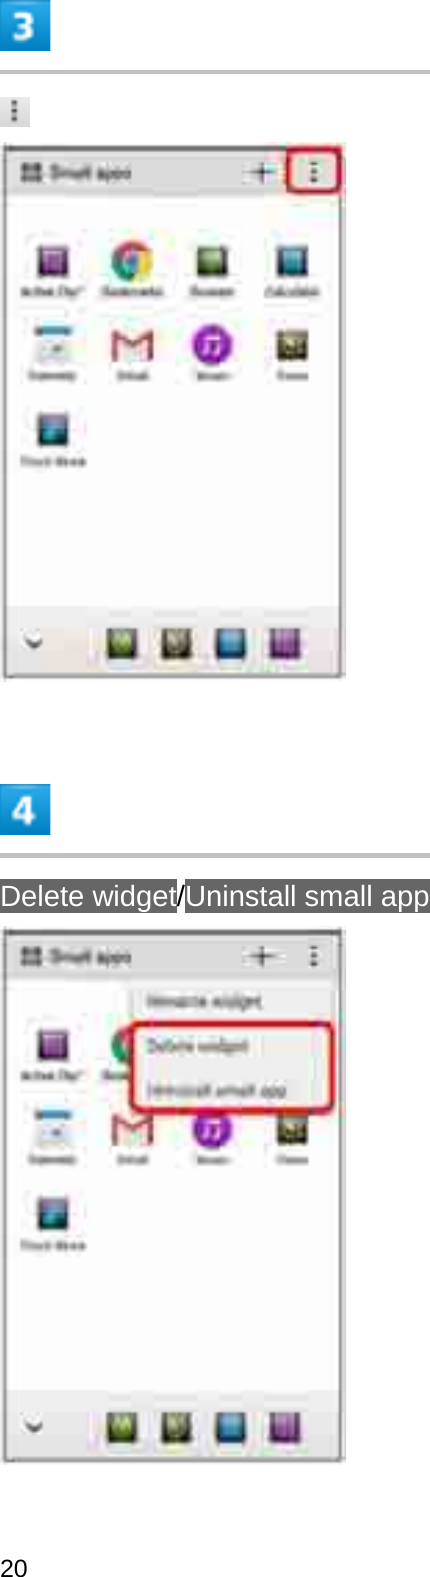 Delete widget/Uninstall small app20